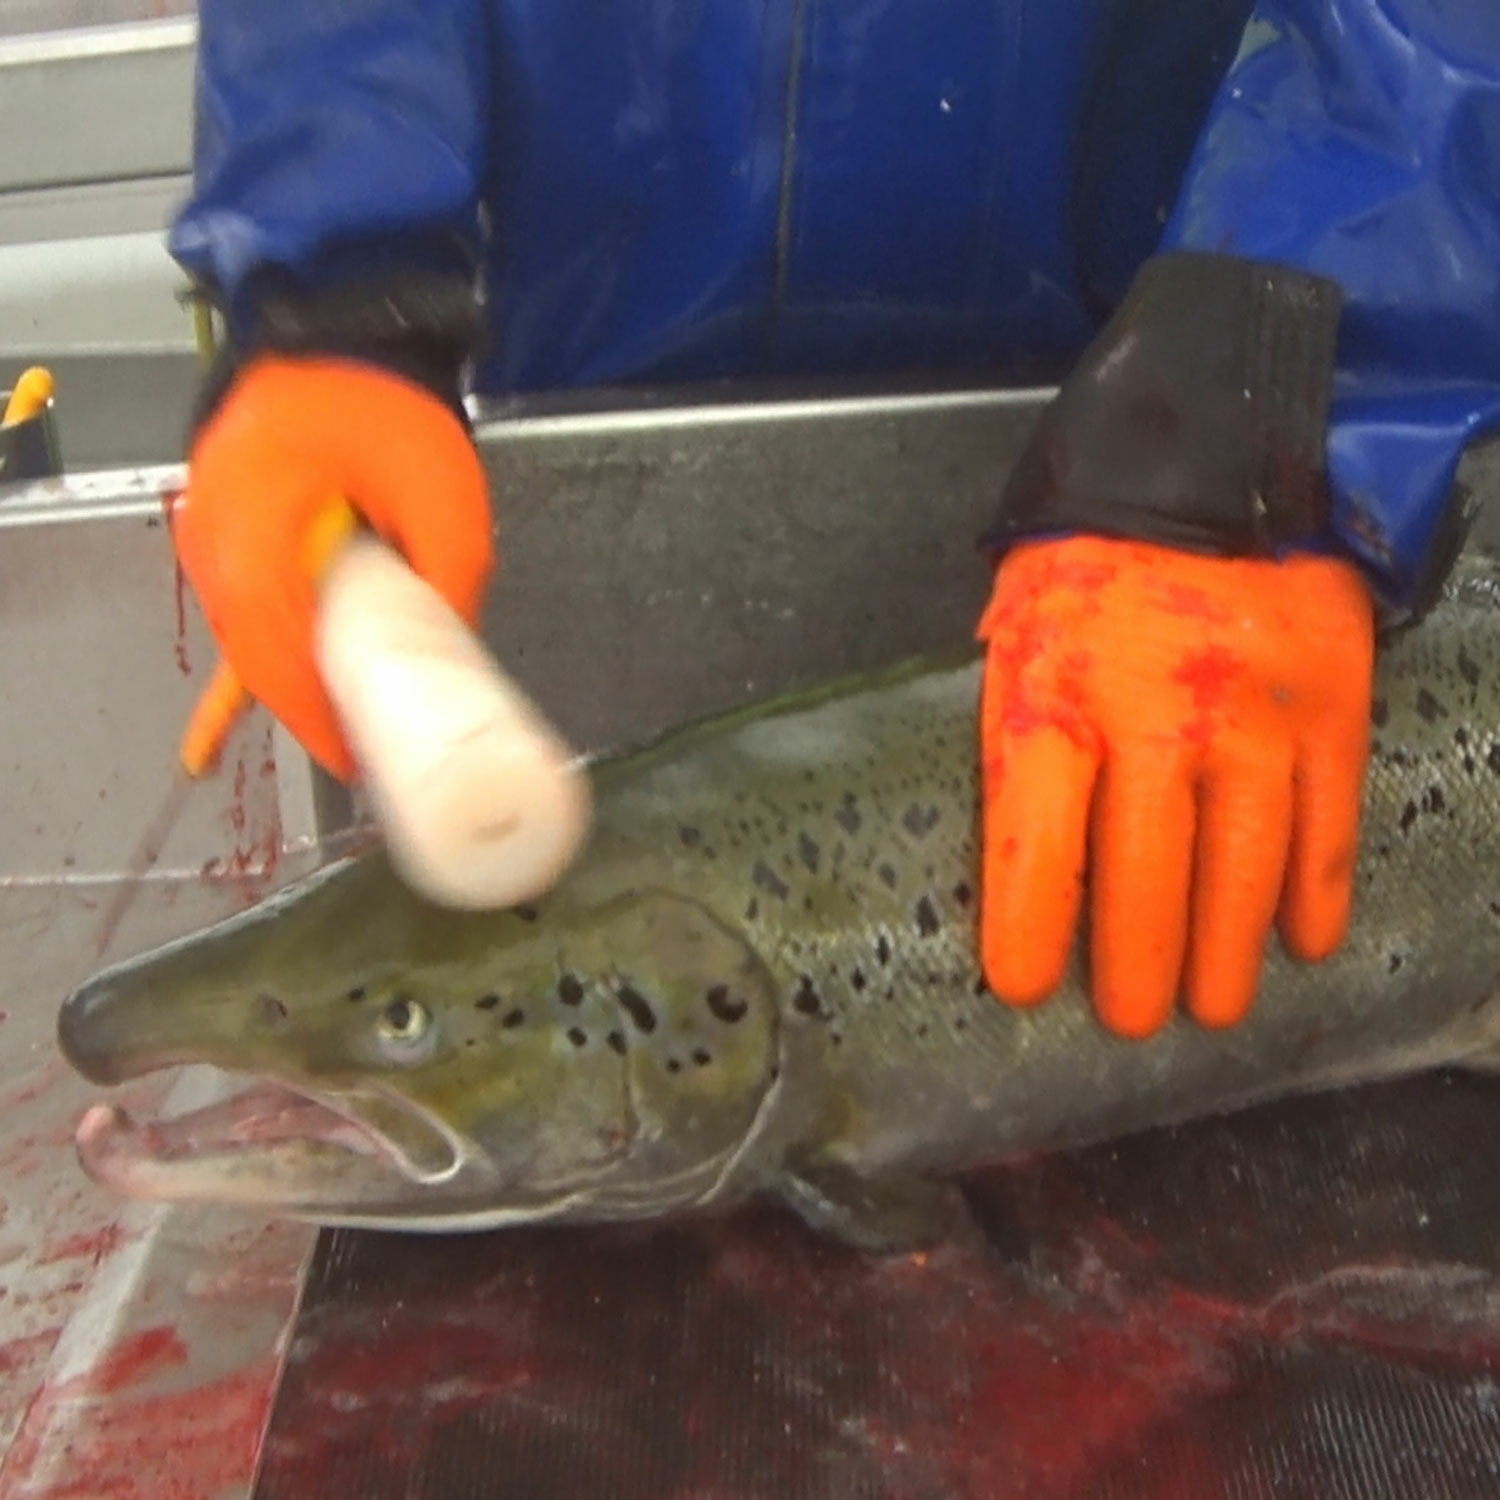 Worker clubbing salmon in slaughterhouse